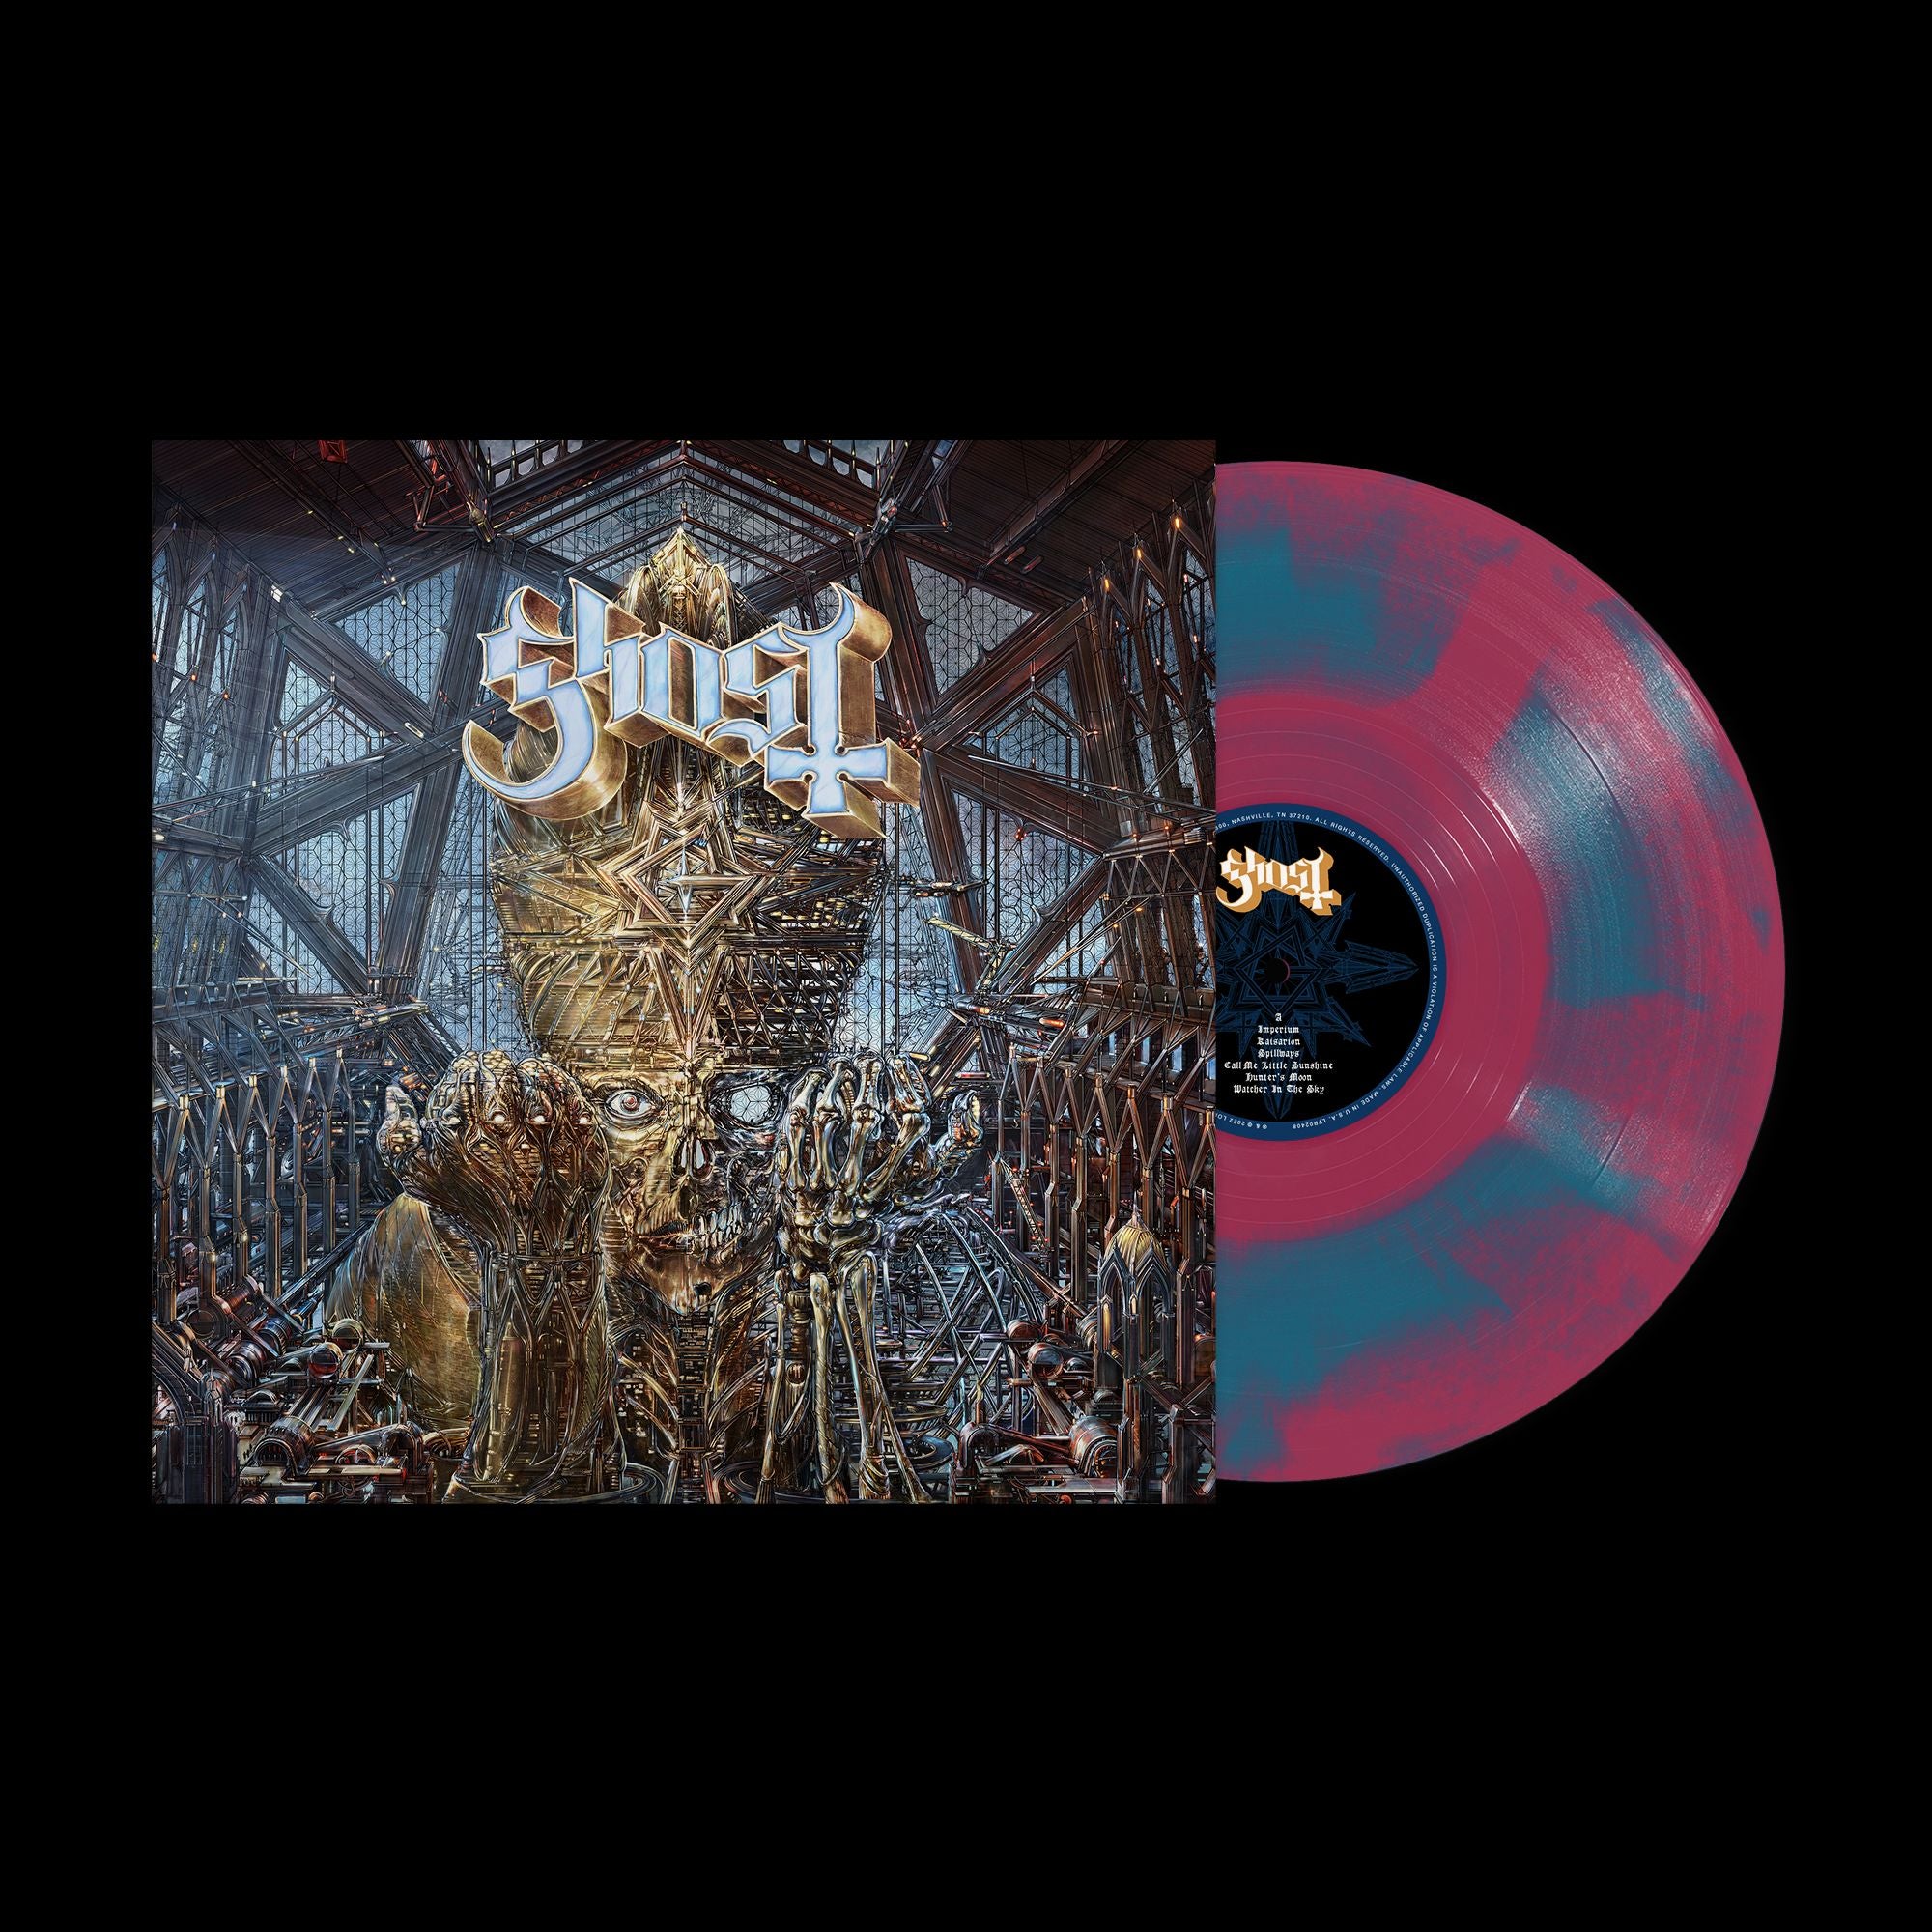 Ghost - Impera (Australian Exclusive Maroon & Blue Vinyl) - Vinyl - New - PRE-ORDER